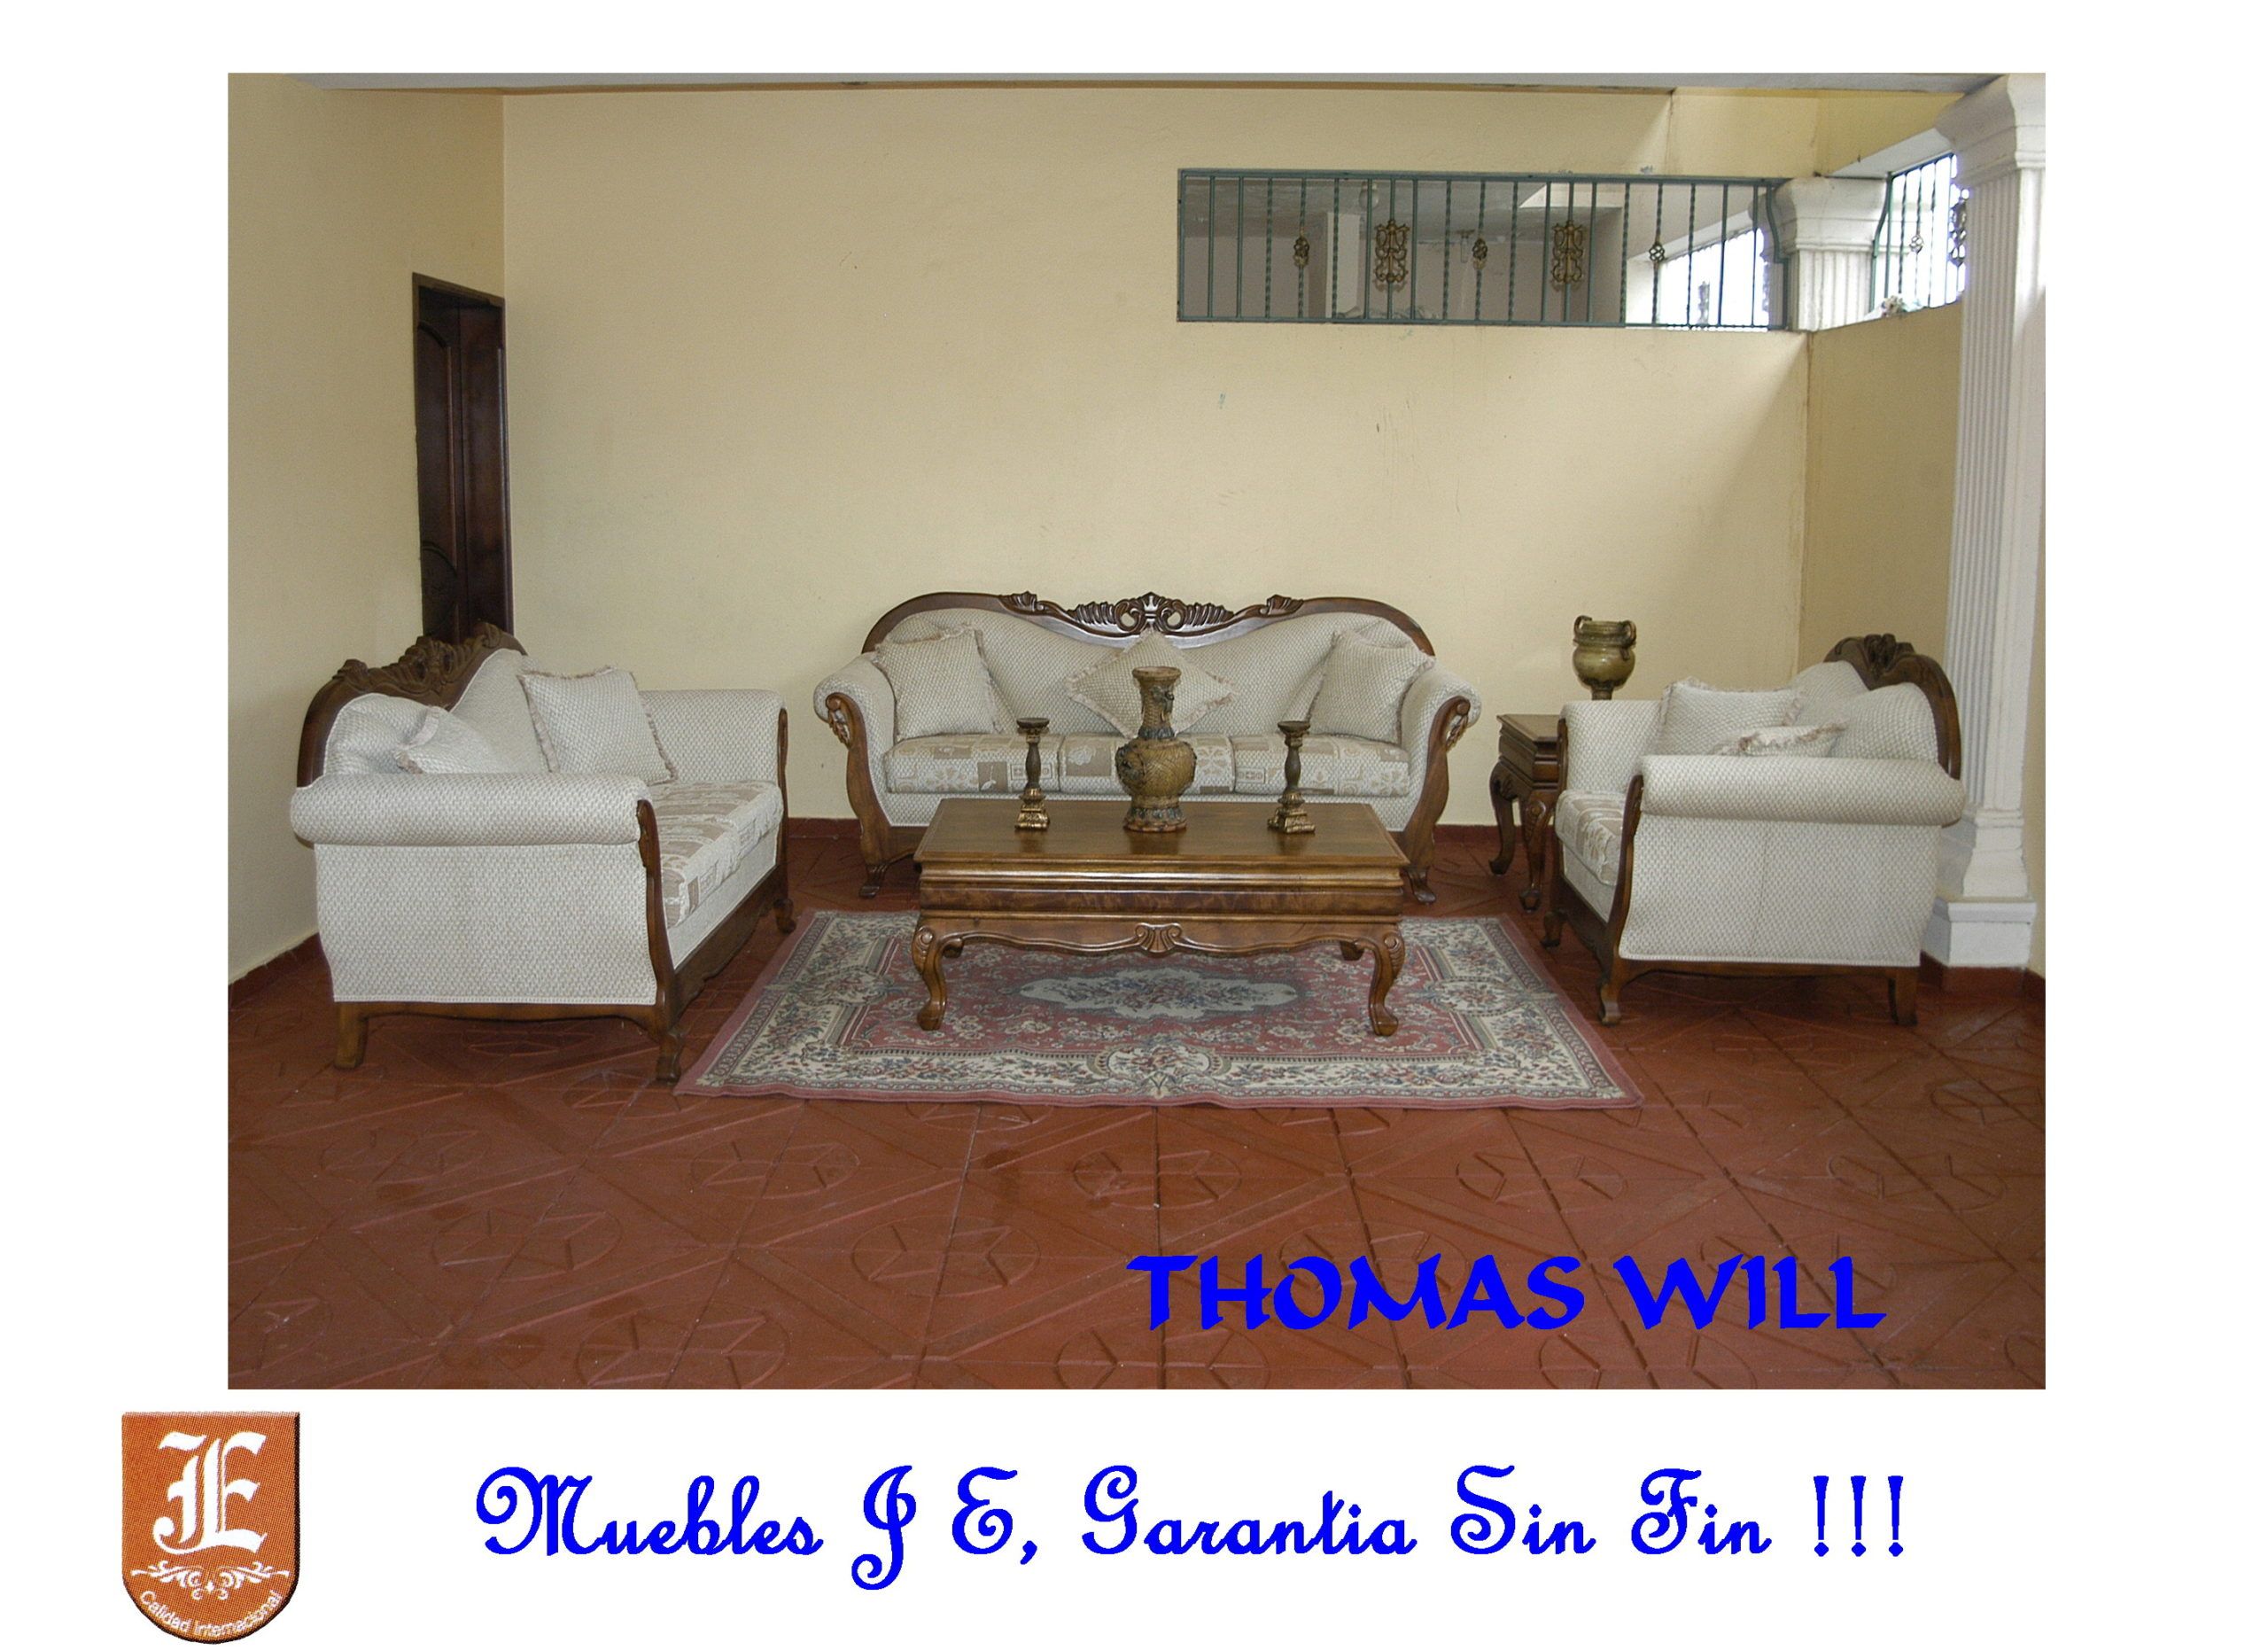 Thomas will